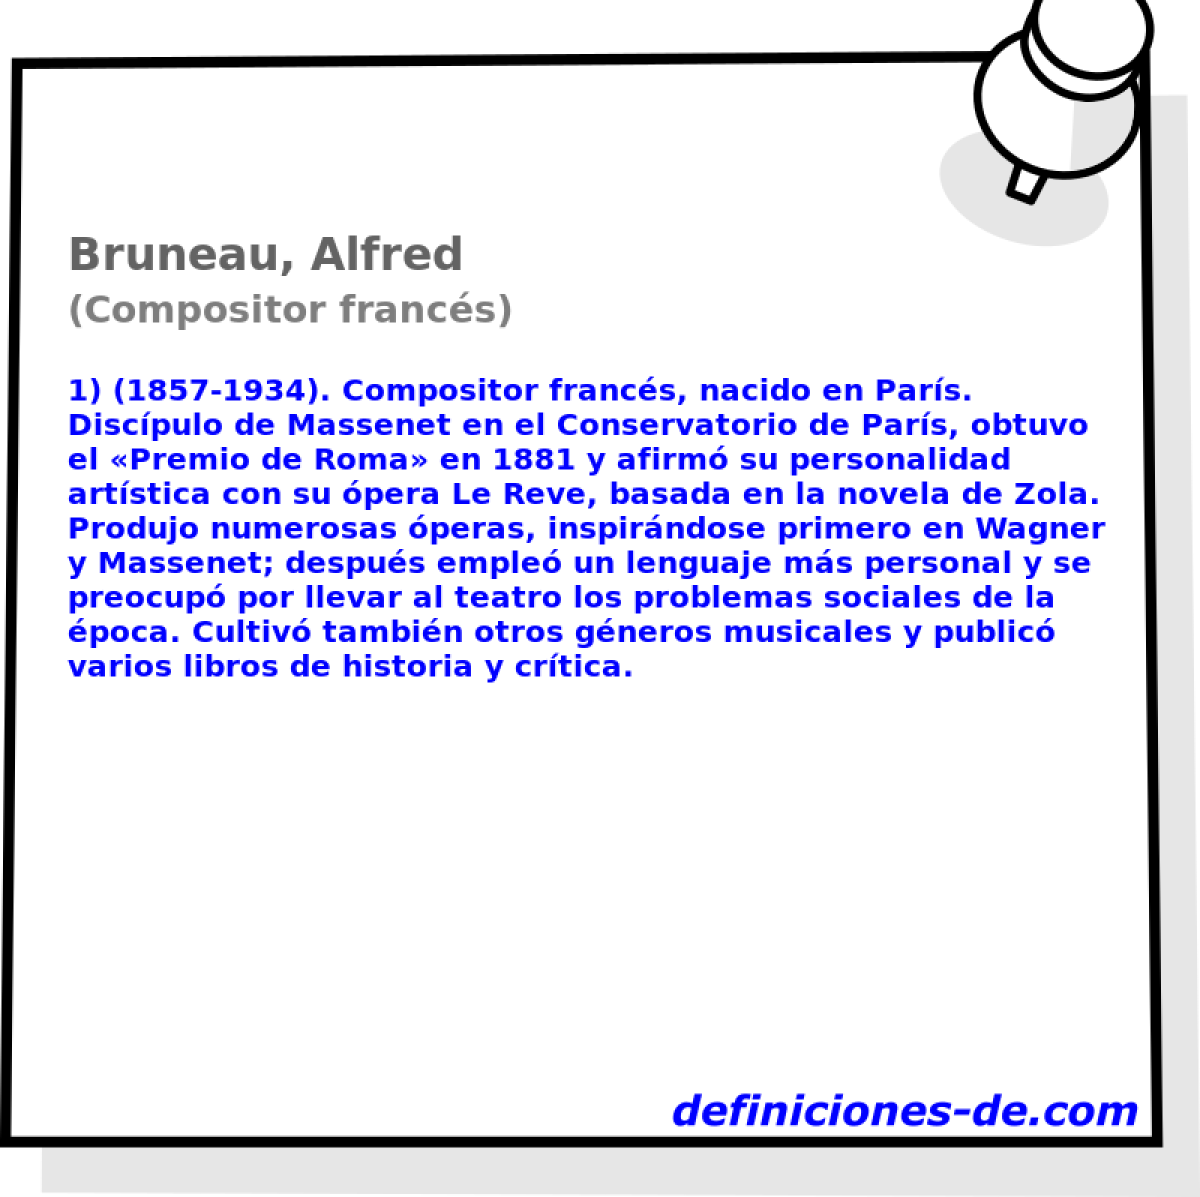 Bruneau, Alfred (Compositor francs)